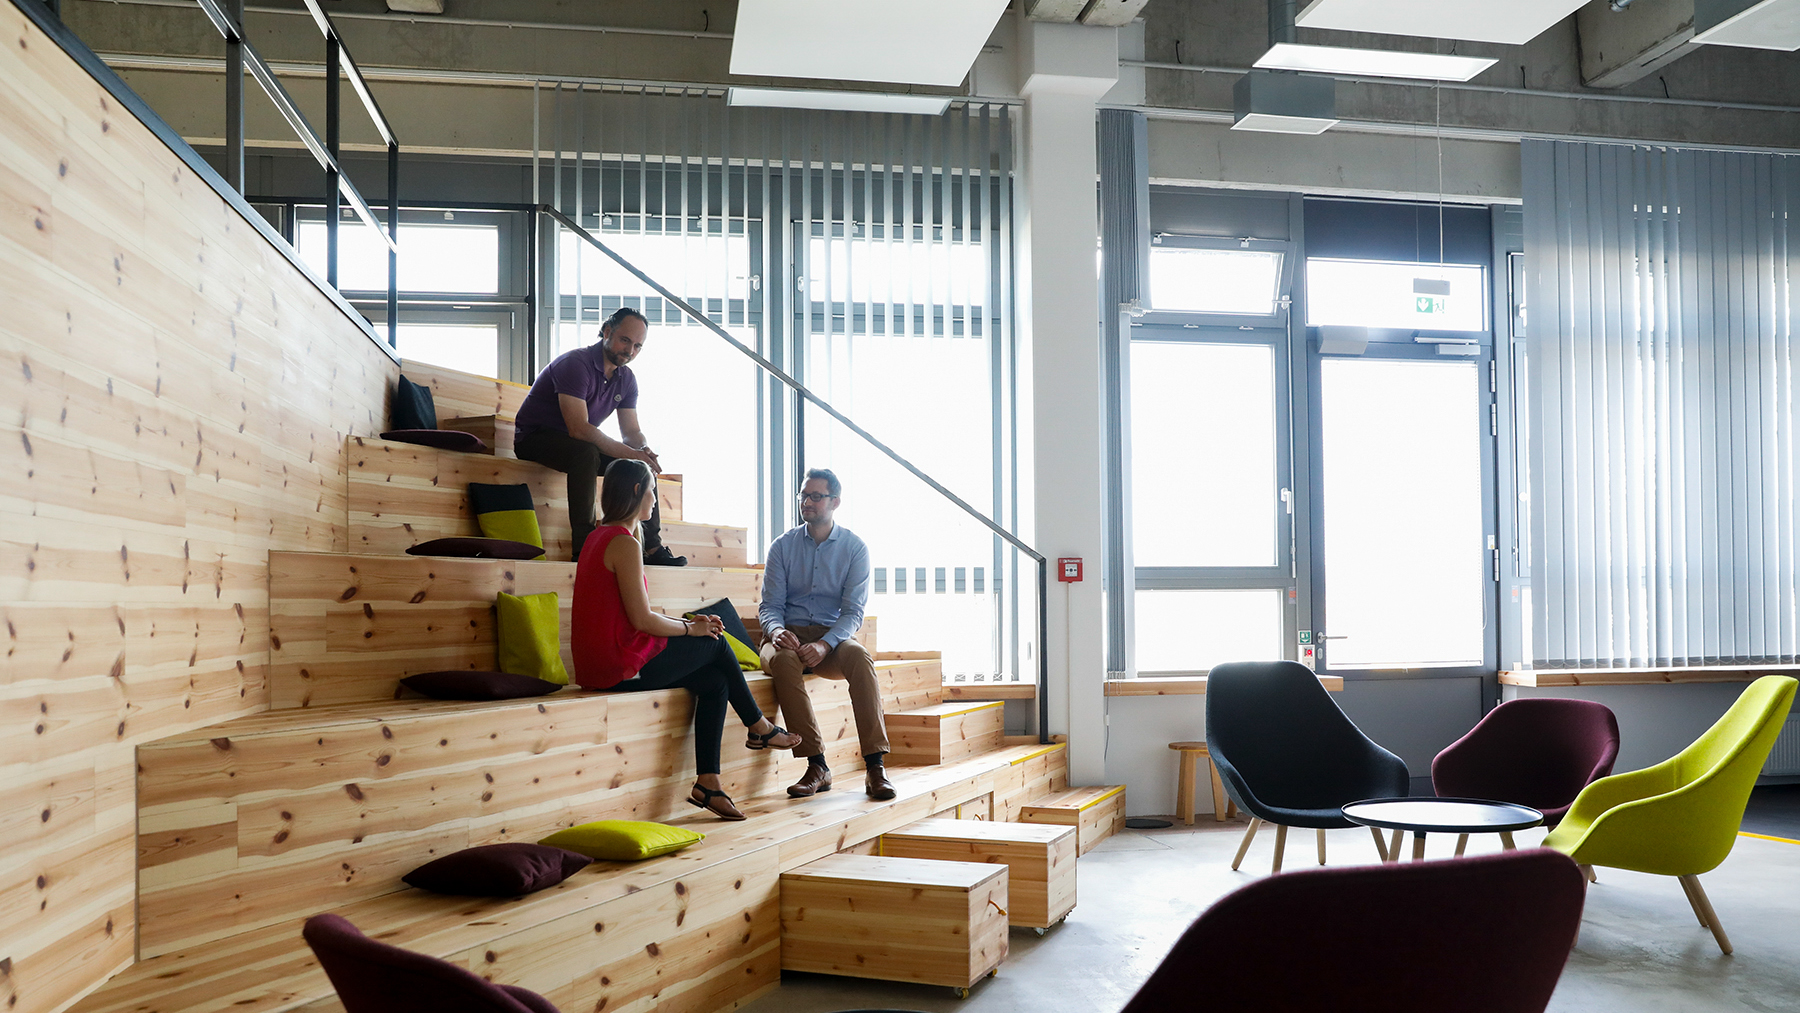 Innovatives Arbeitsumfeld mit Holzstufen, auf denen sich Kollegen unterhalten